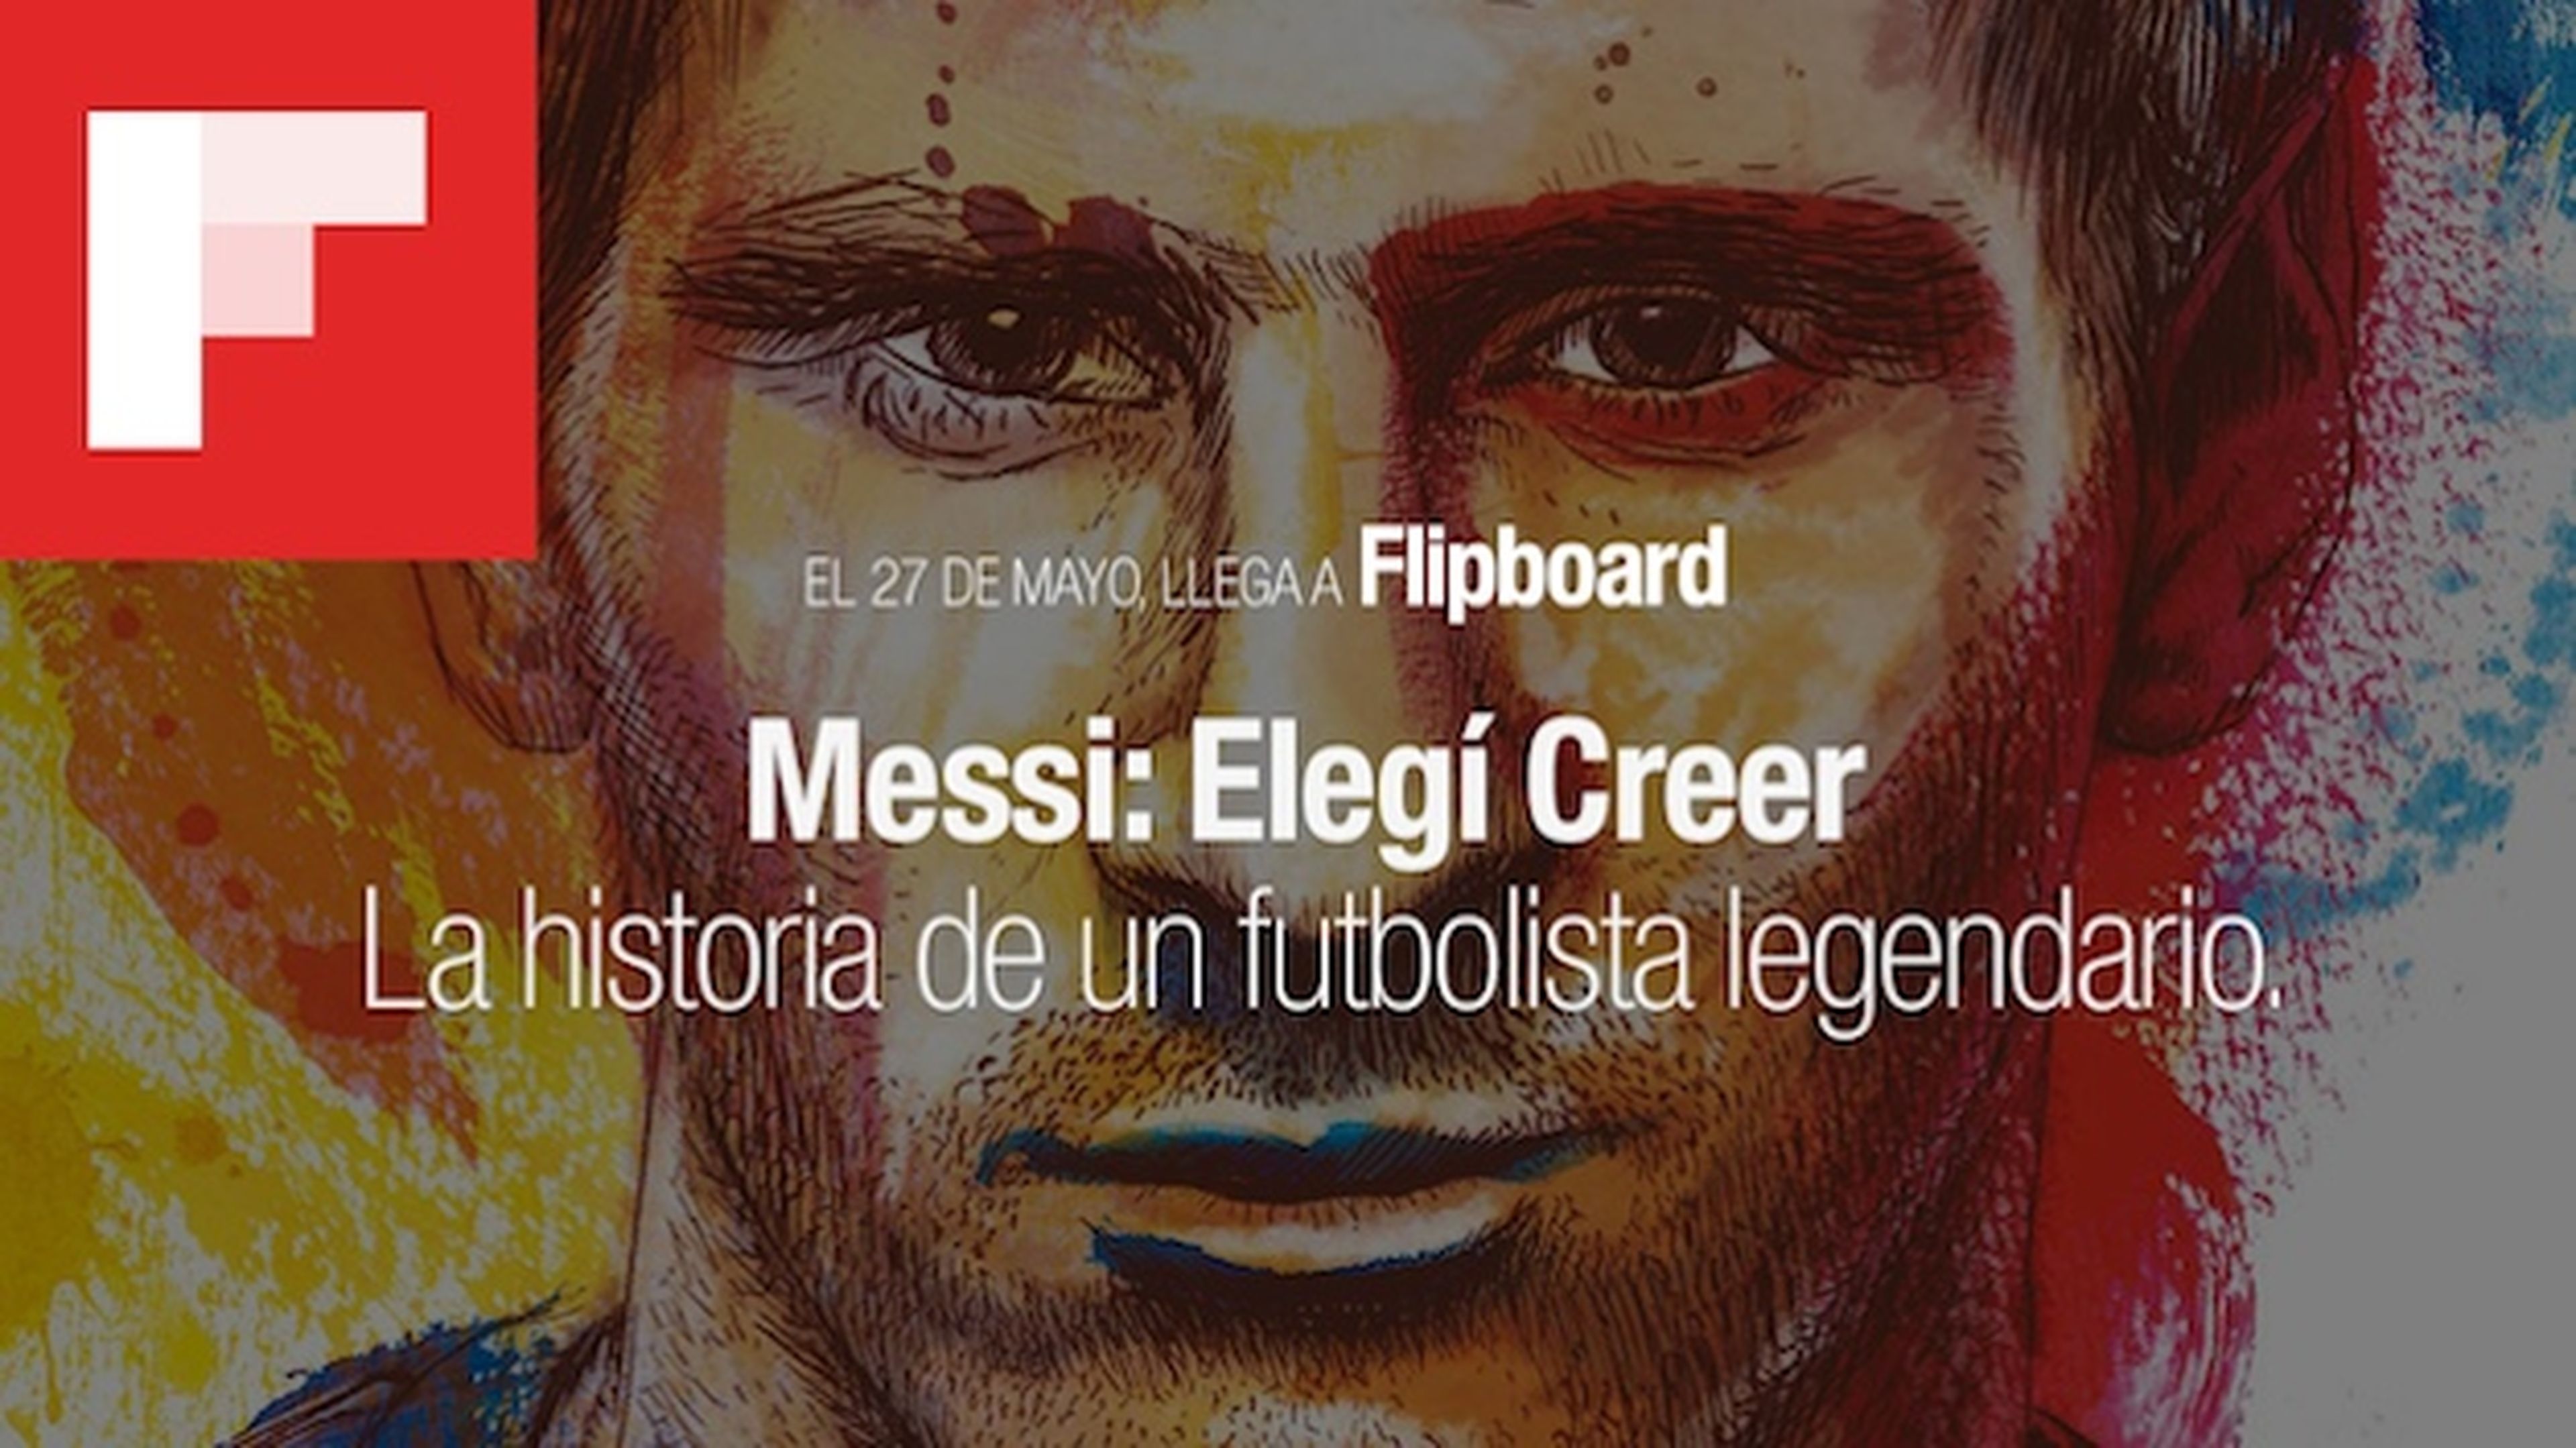 Messi publicará 6 capítulos de su autobiografía en Flipboard